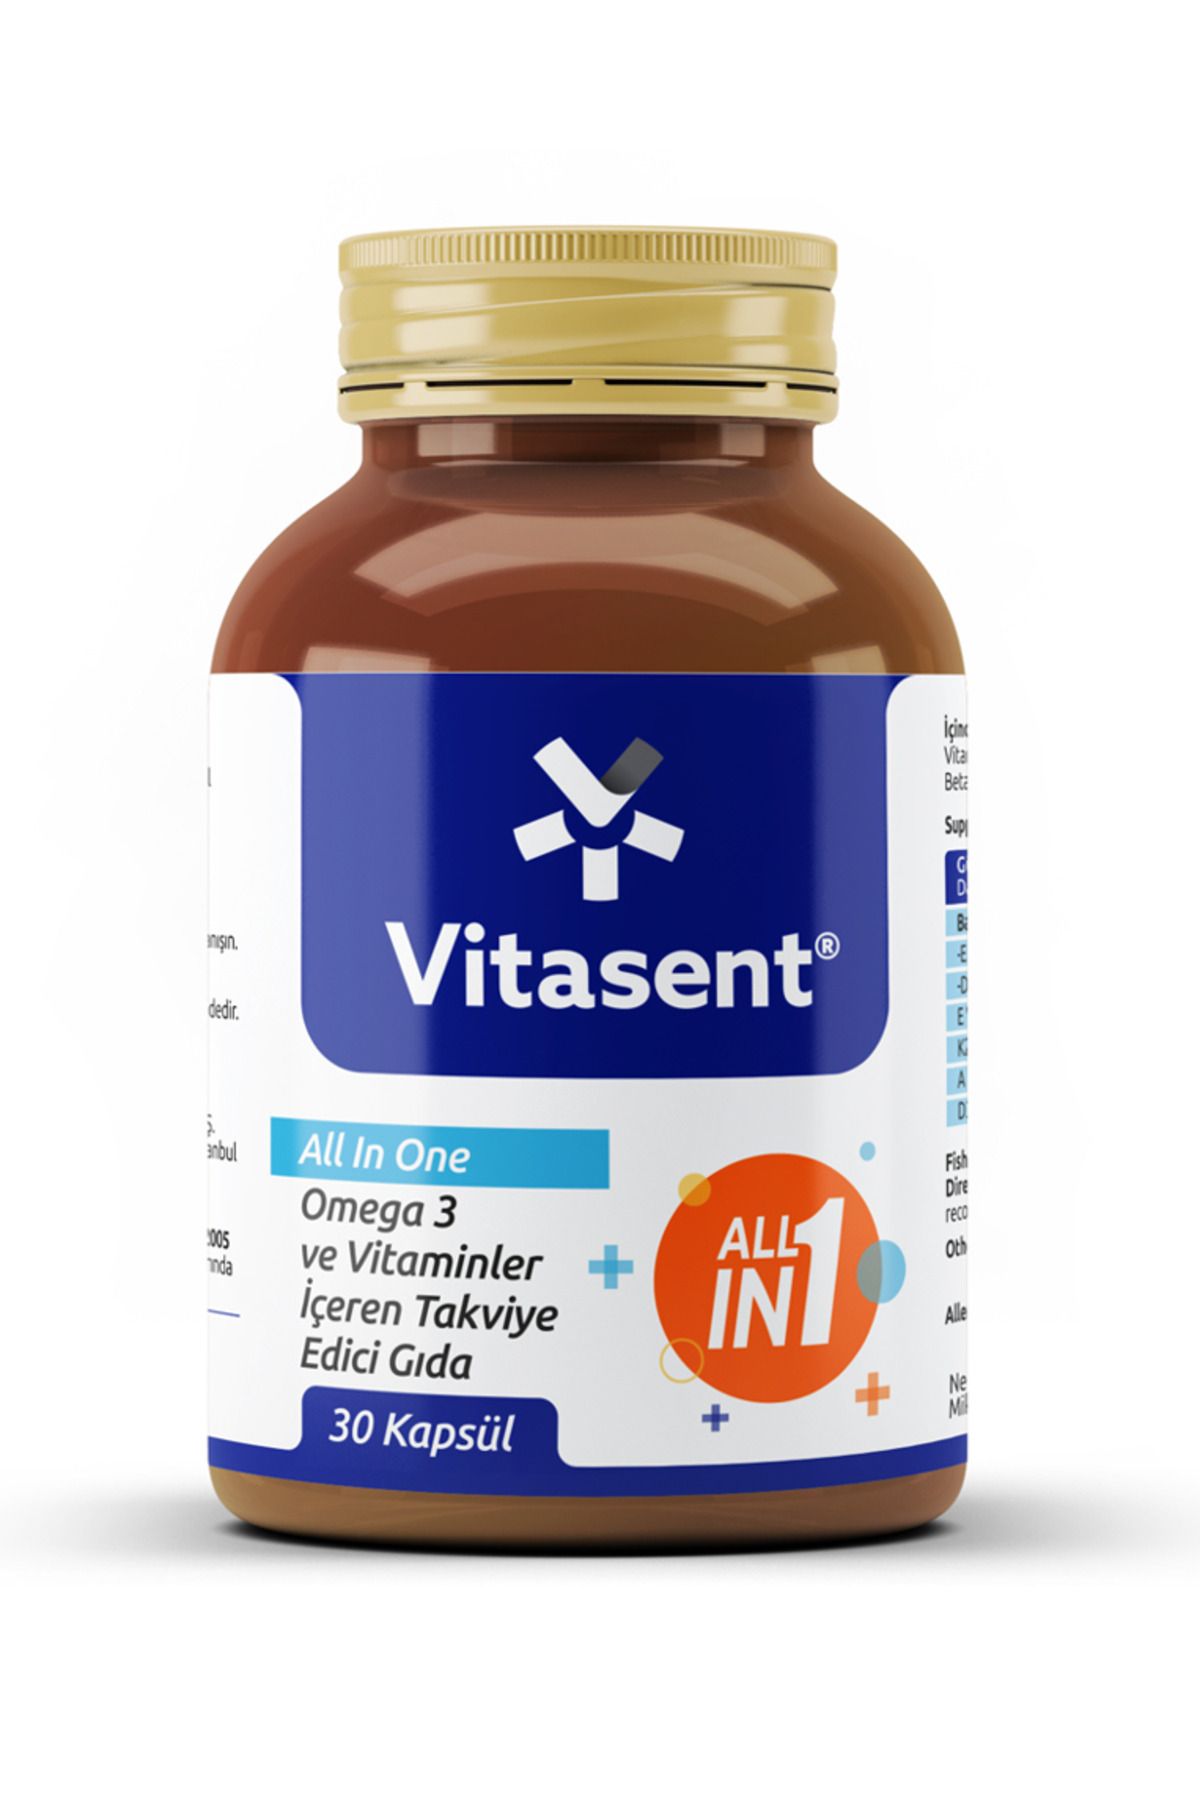 VİTASENT Vitasent All in One Omega 3 Multivitamin